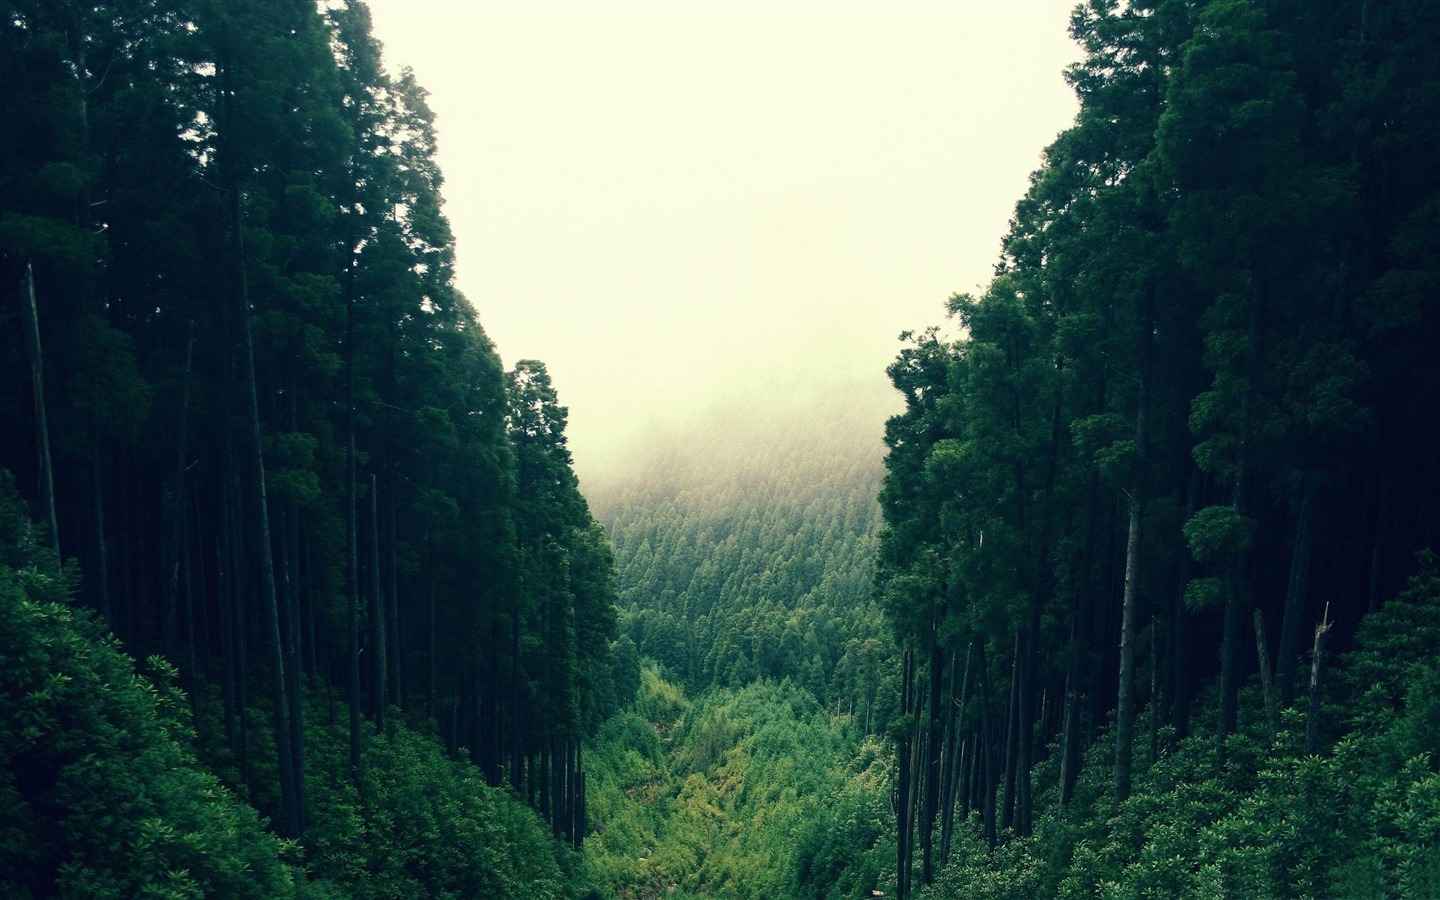 tumblr forest wallpaper,green,nature,natural landscape,vegetation,forest